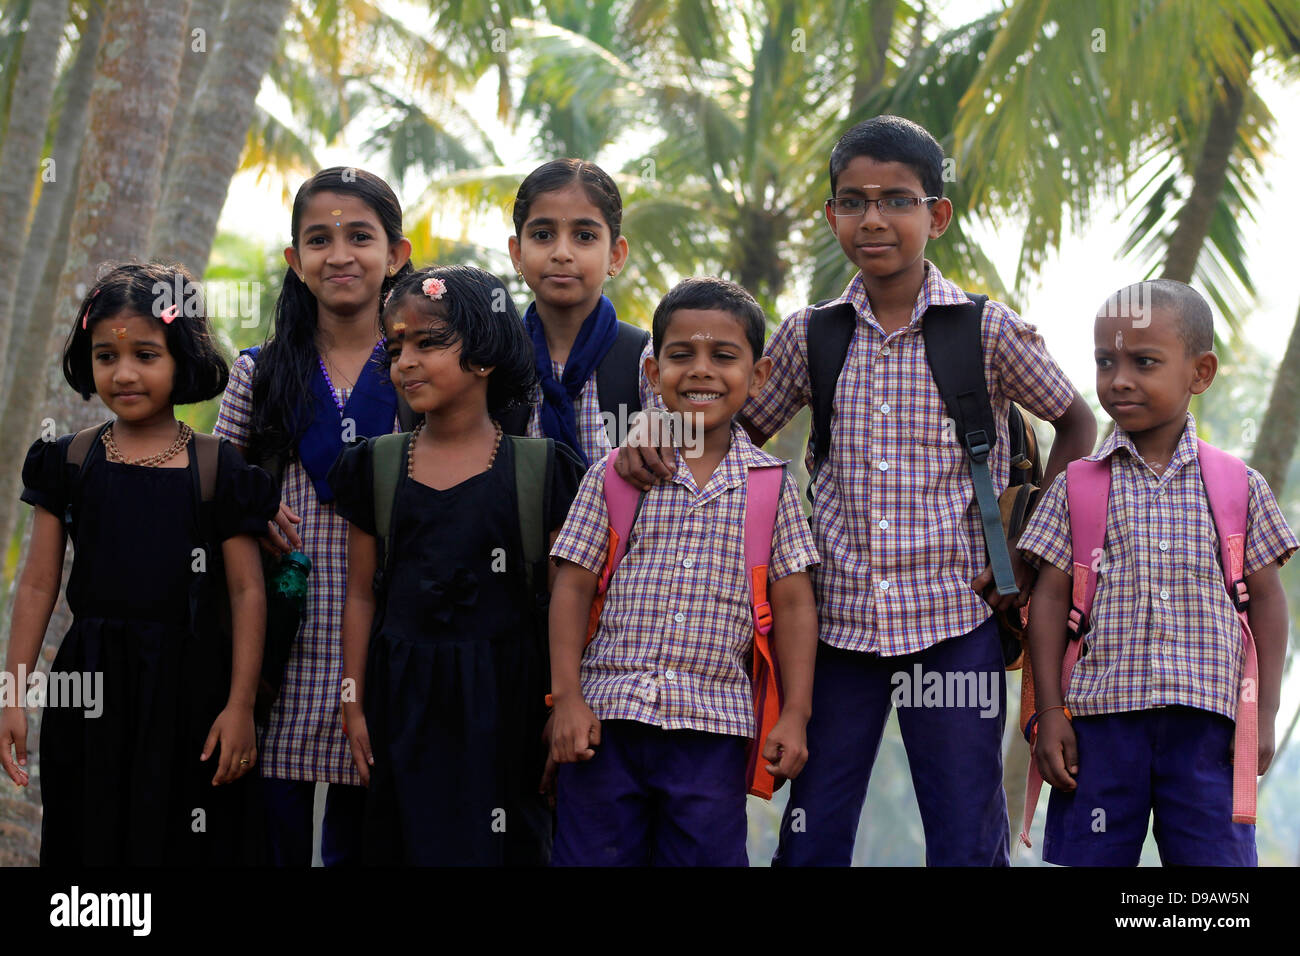 Les enfants de l'école posent joyeusement. Kerala, Inde rurale Banque D'Images